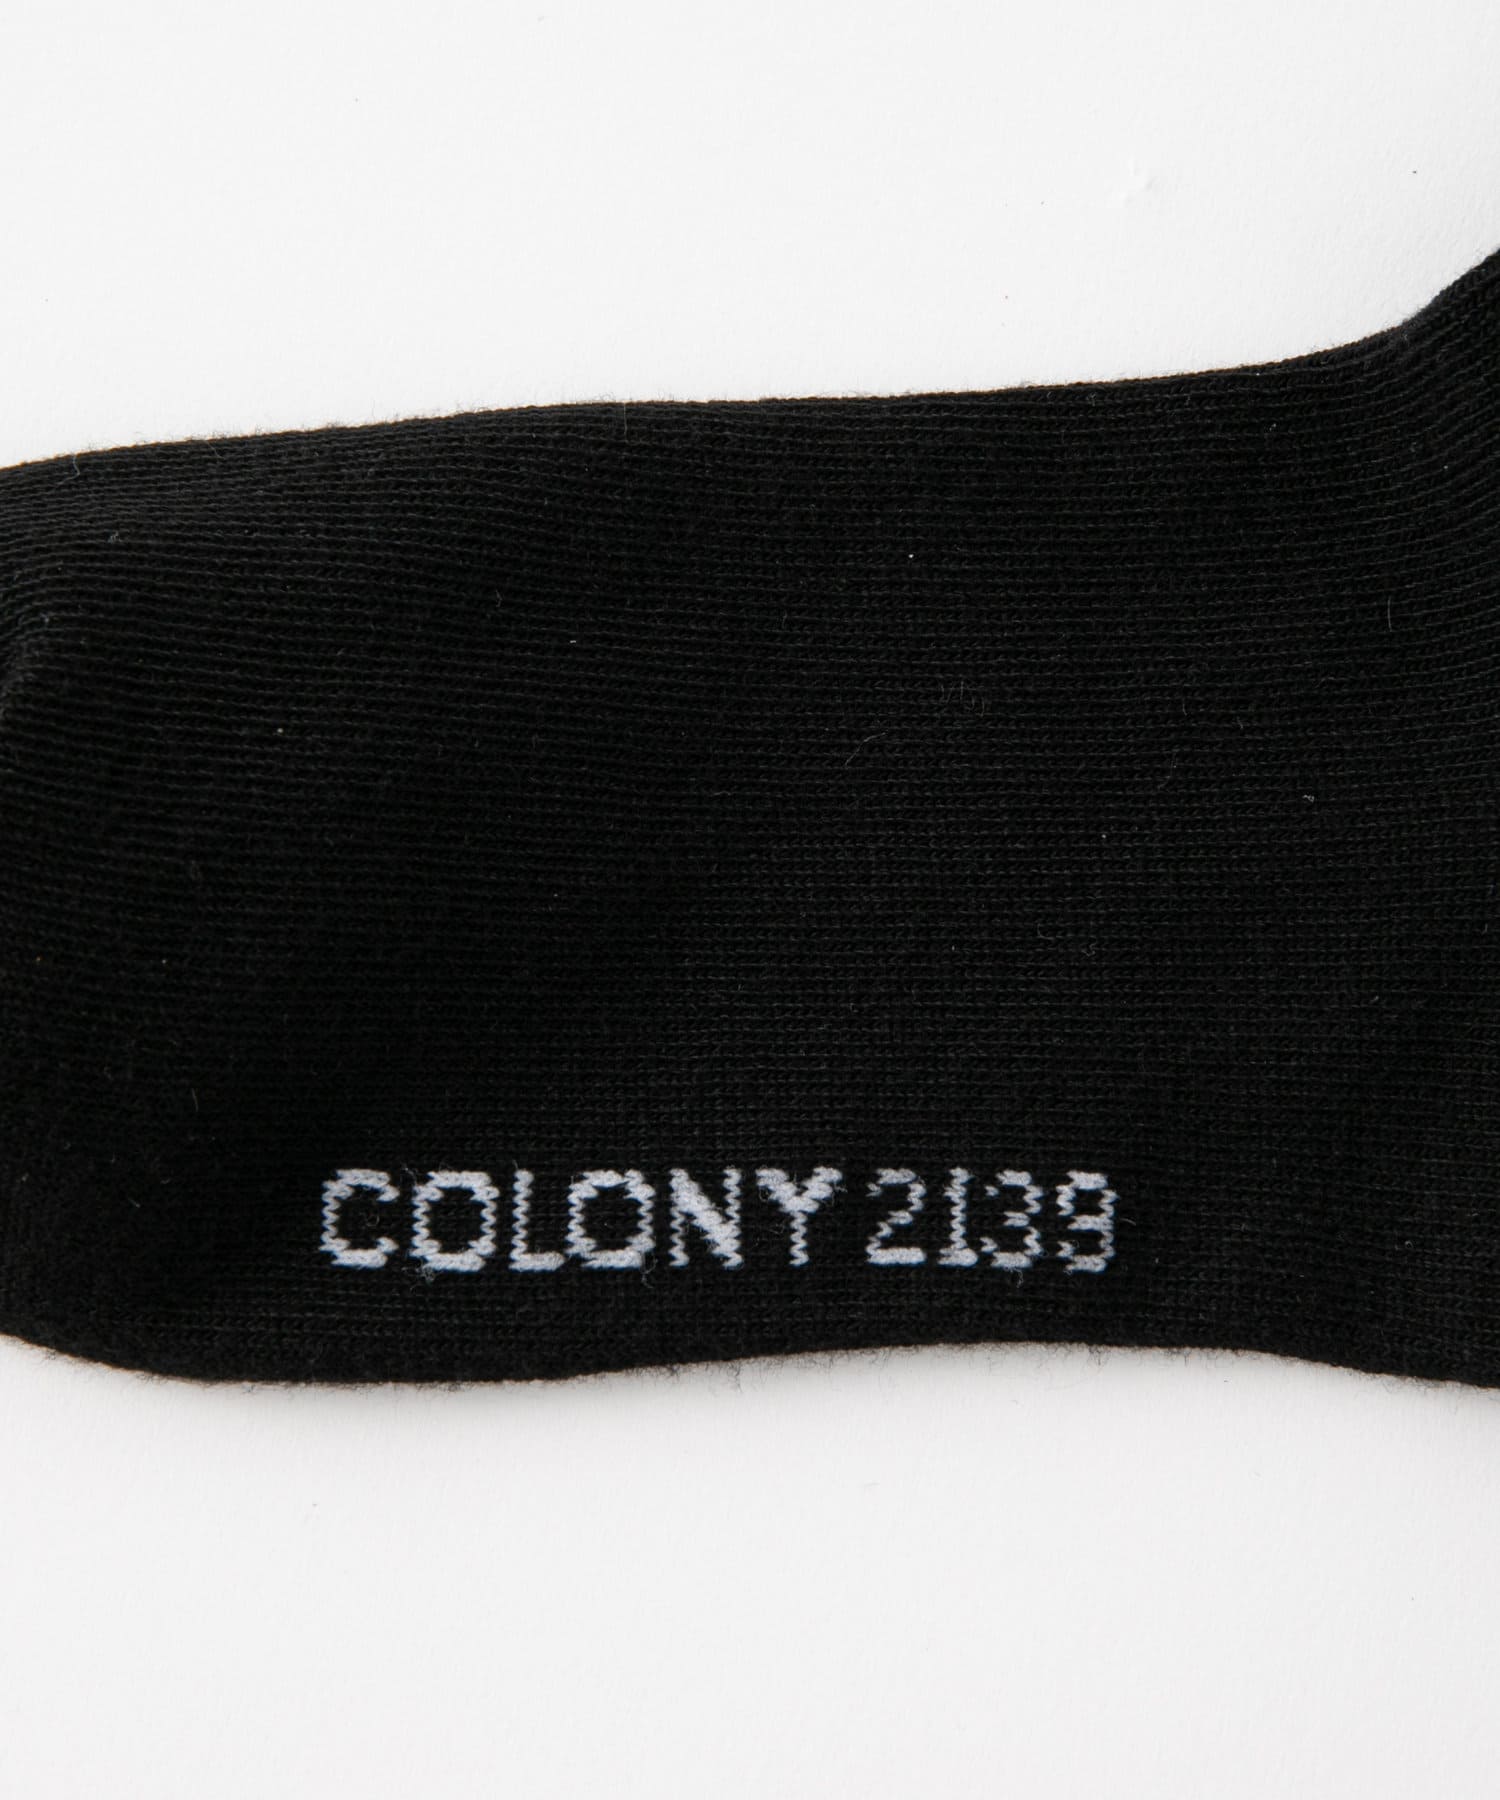 COLONY 2139(コロニー トゥーワンスリーナイン) バックロゴソックス